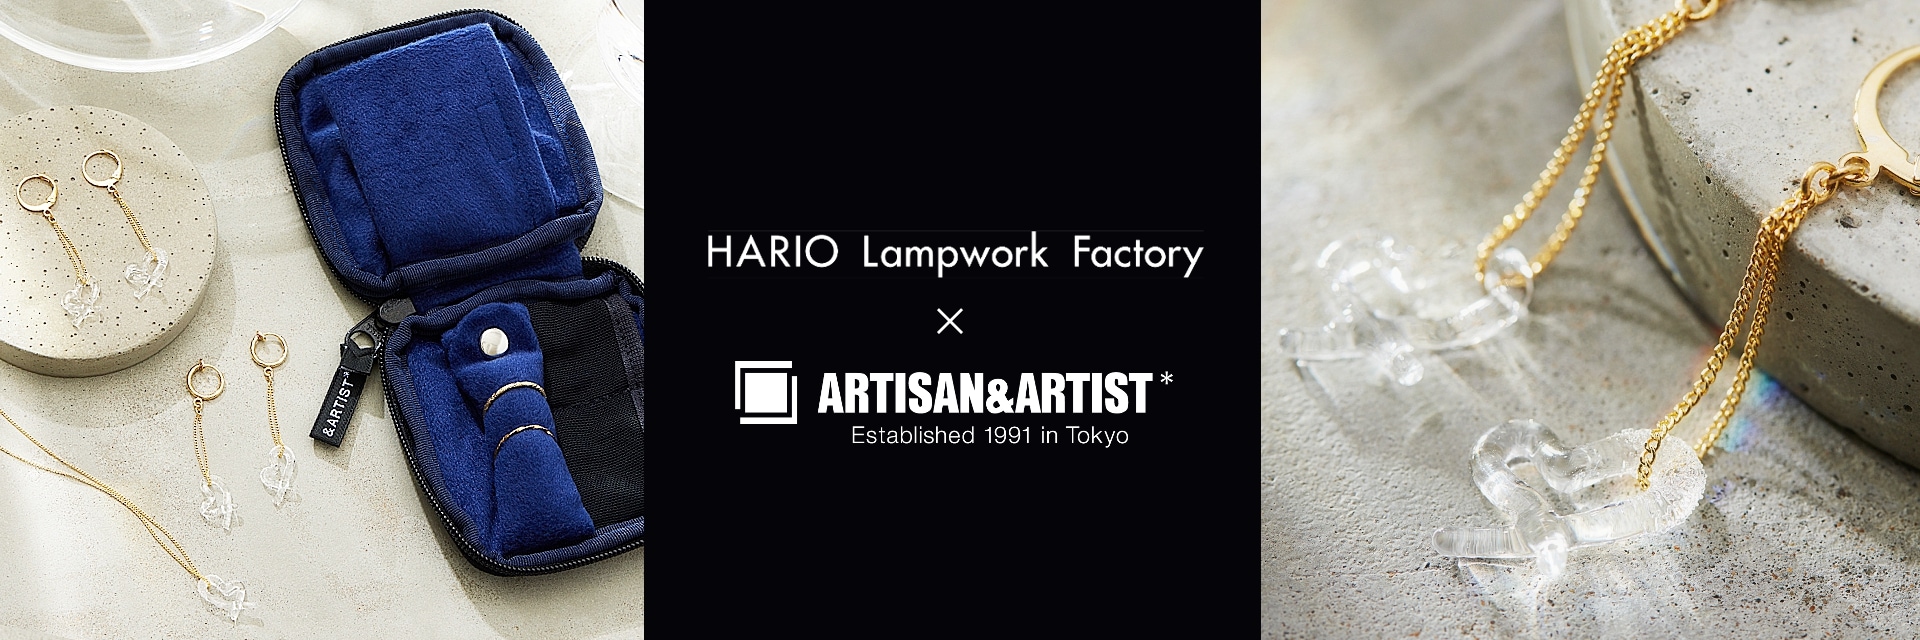 HARIO Lampwork Factory コラボレーションアイテム 一覧ページ